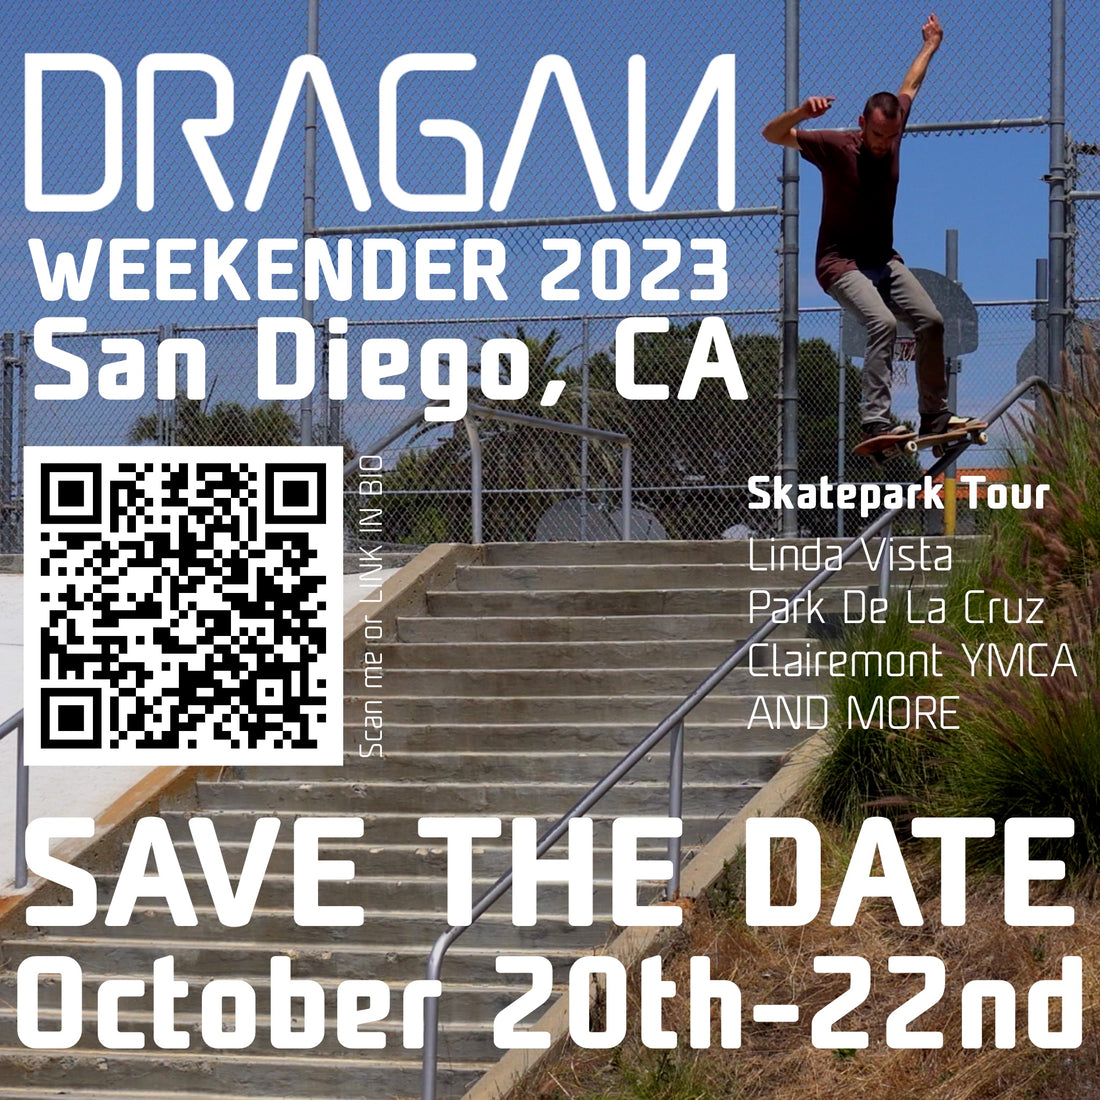 Dragan Weekender 2023 San Diego, CA